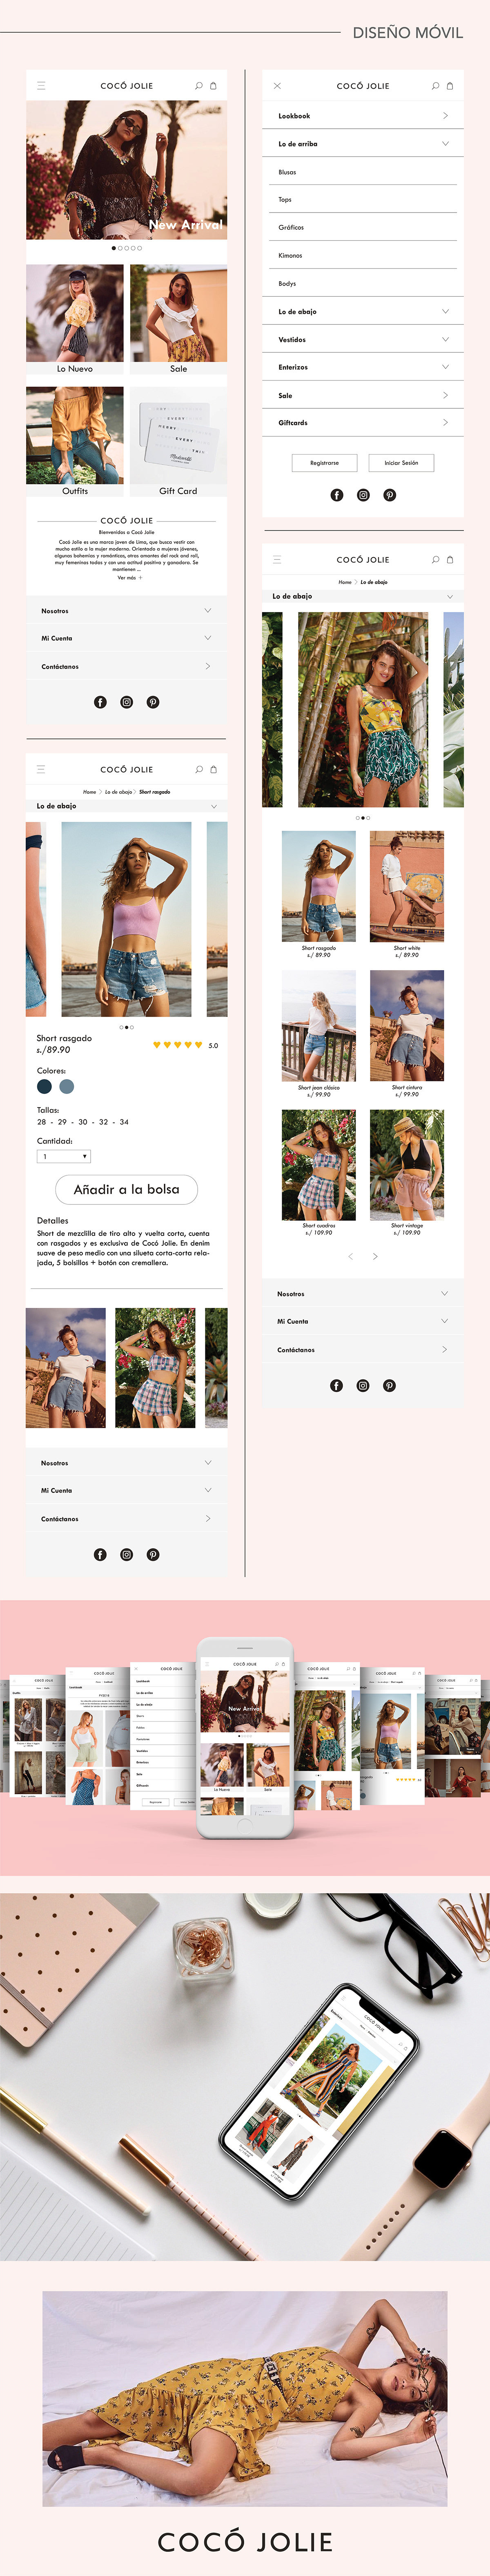 moda e-commerce Web diseño mockups movil Coco jolie